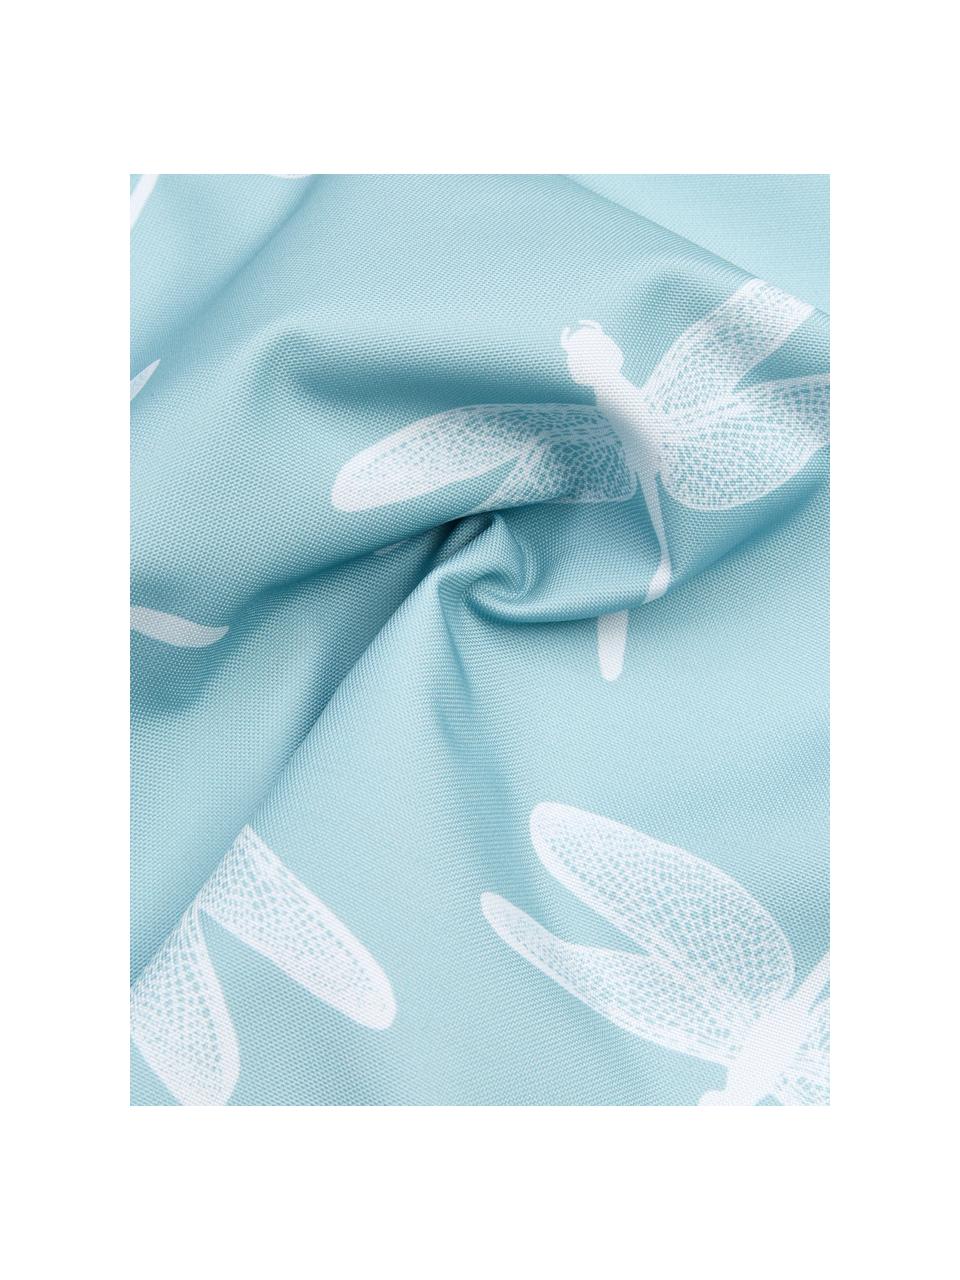 Venkovní polštář s motivy vážky Dragonfly, 100 % polyester, Modrá, bílá, Š 47 cm, D 47 cm